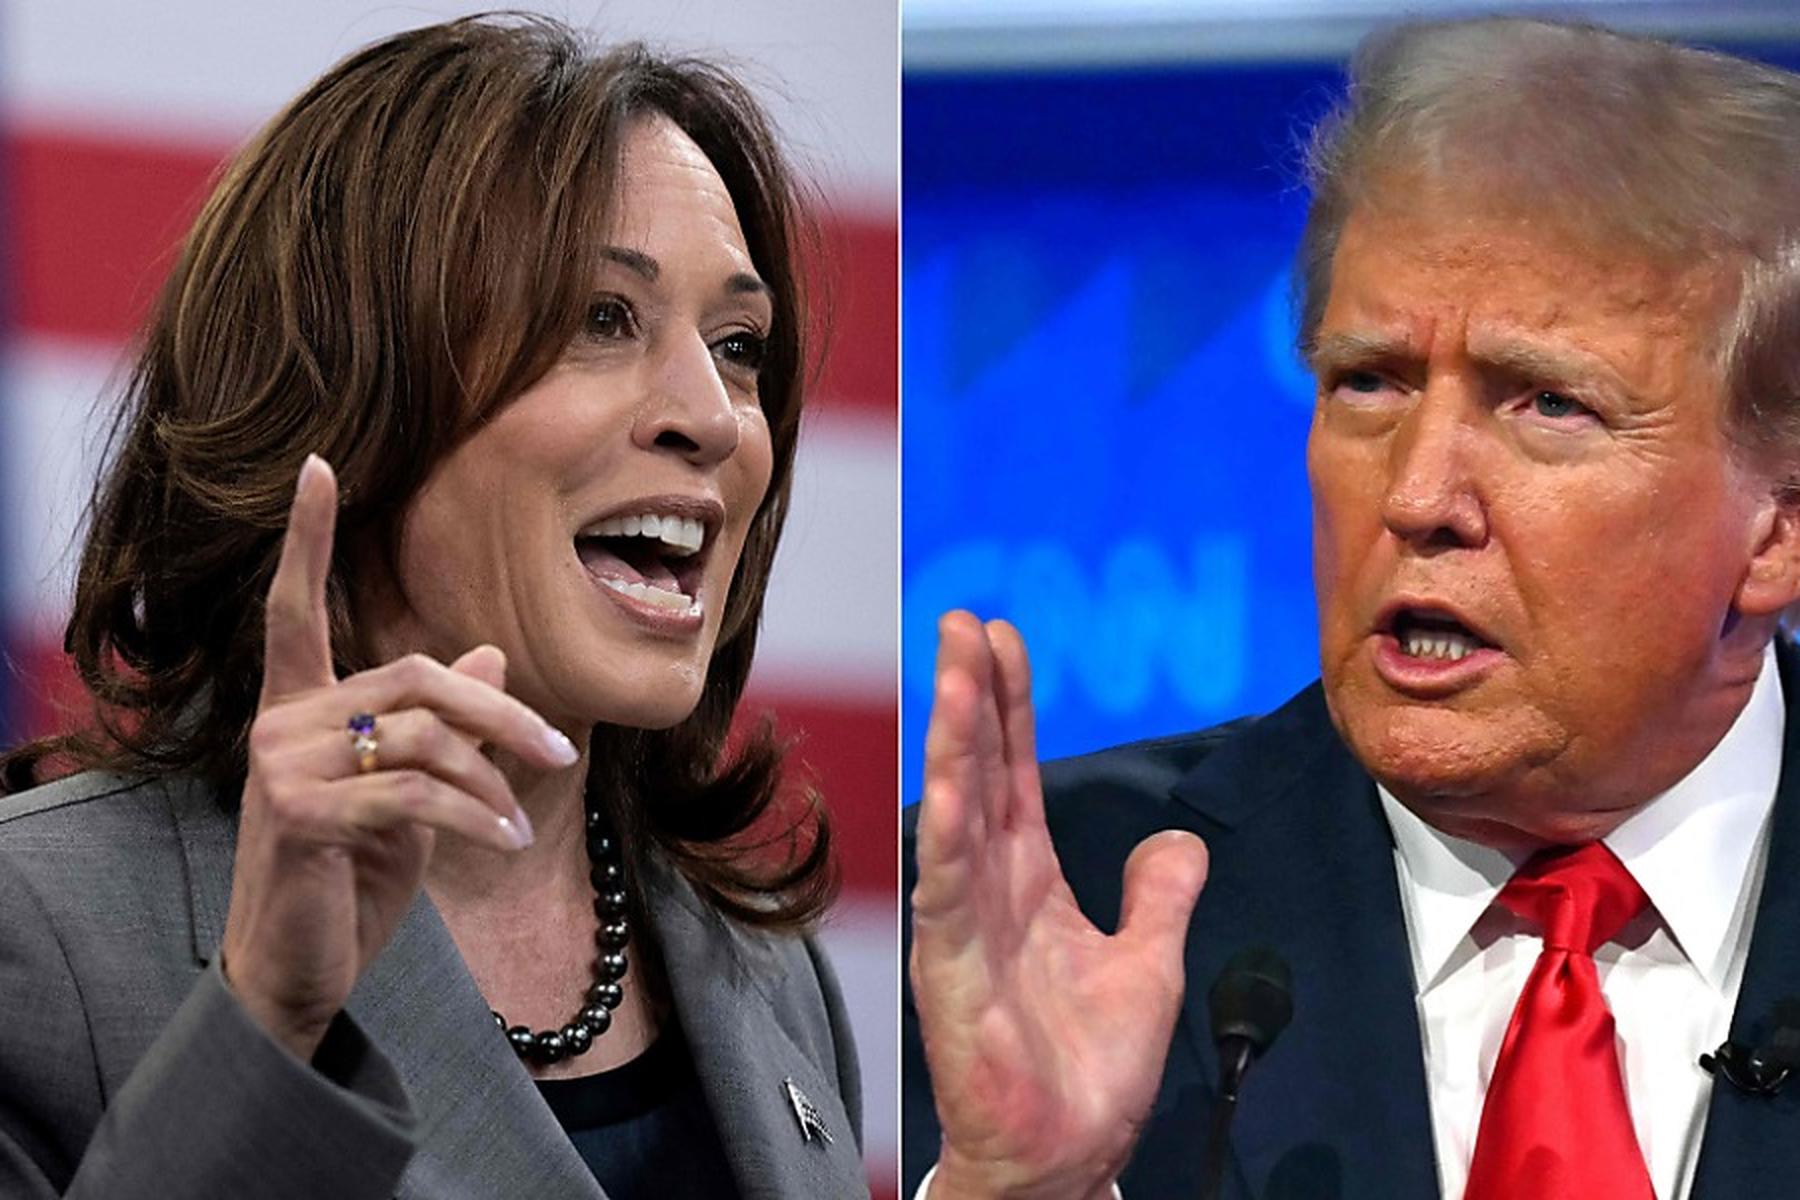 Washington: Harris und Trump streiten um Termin und Sender für TV-Duell